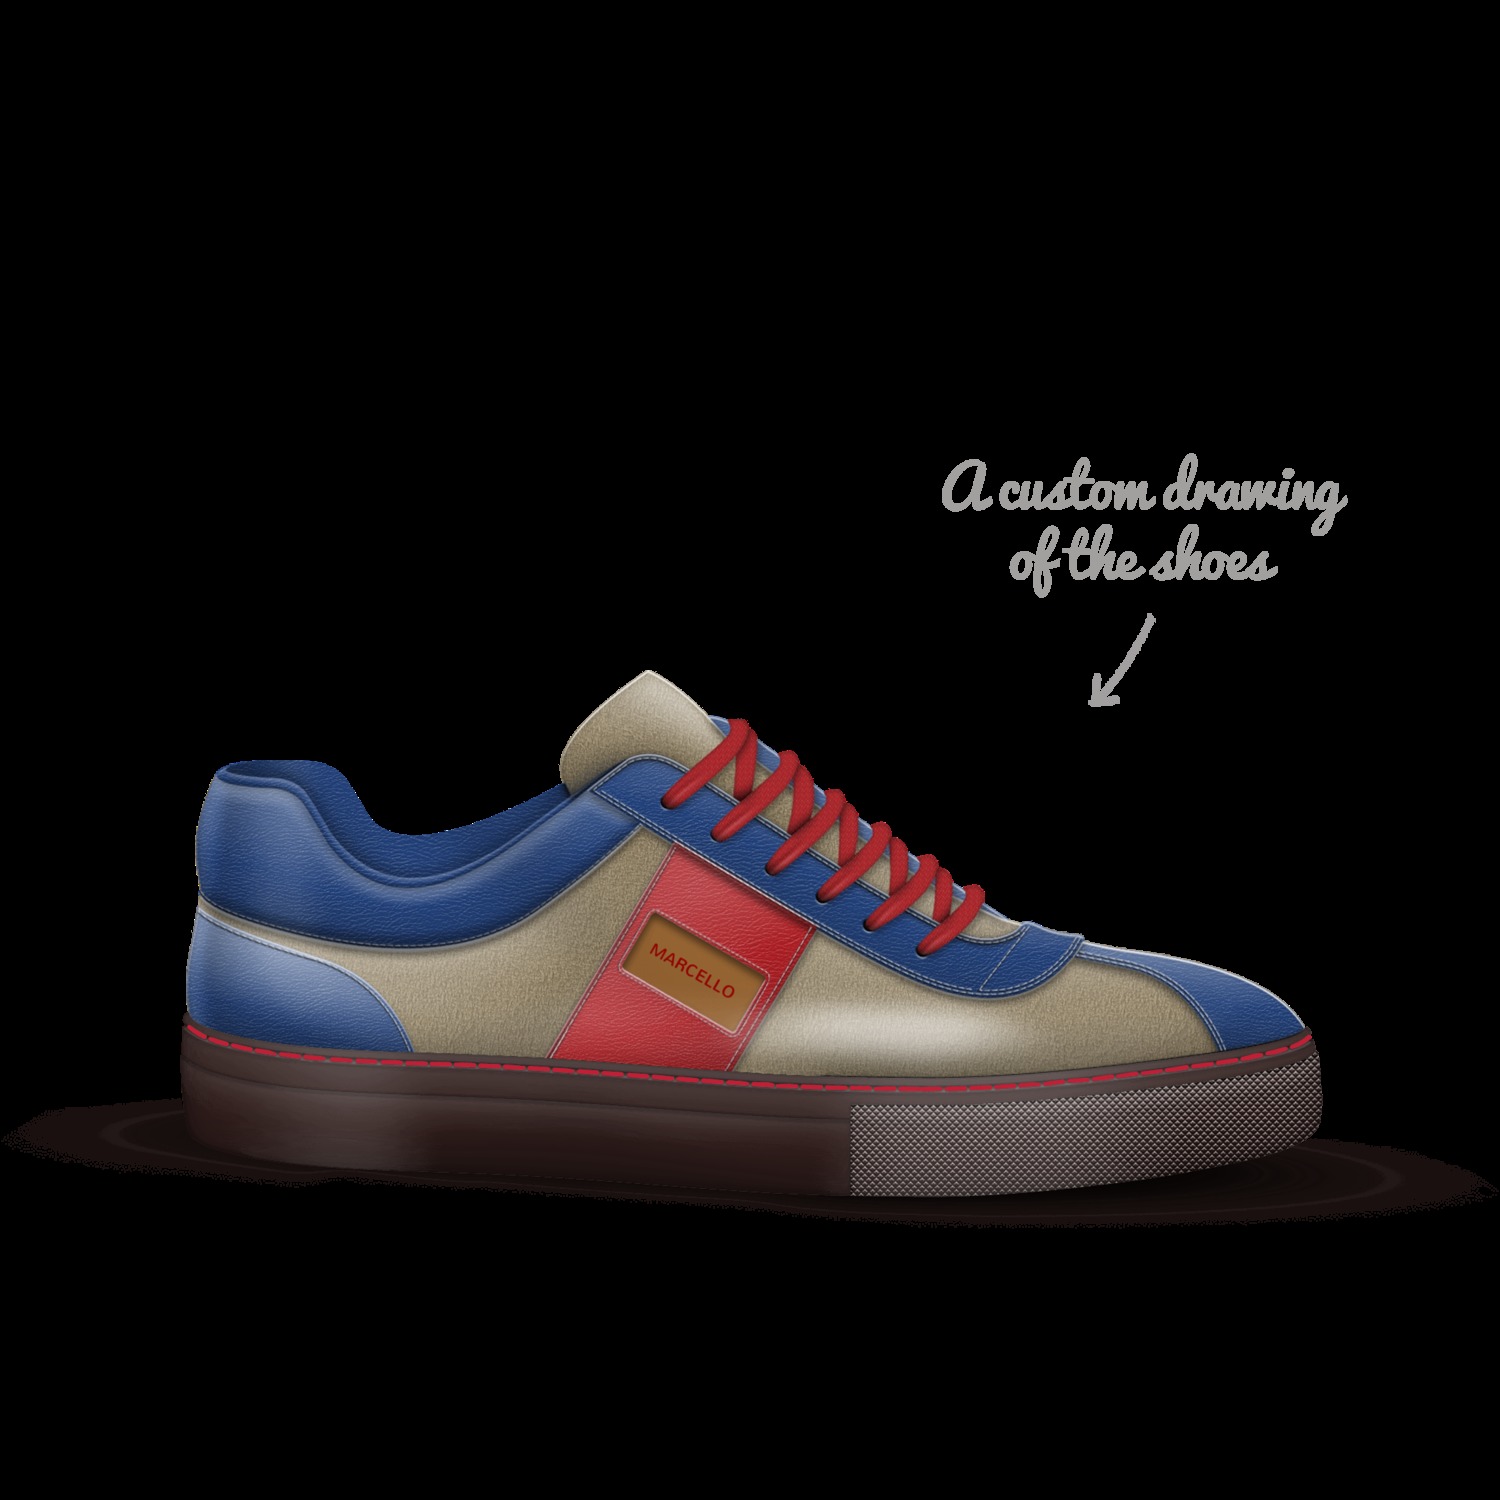 Shoe concept by Jean-jeffrey Marcellus